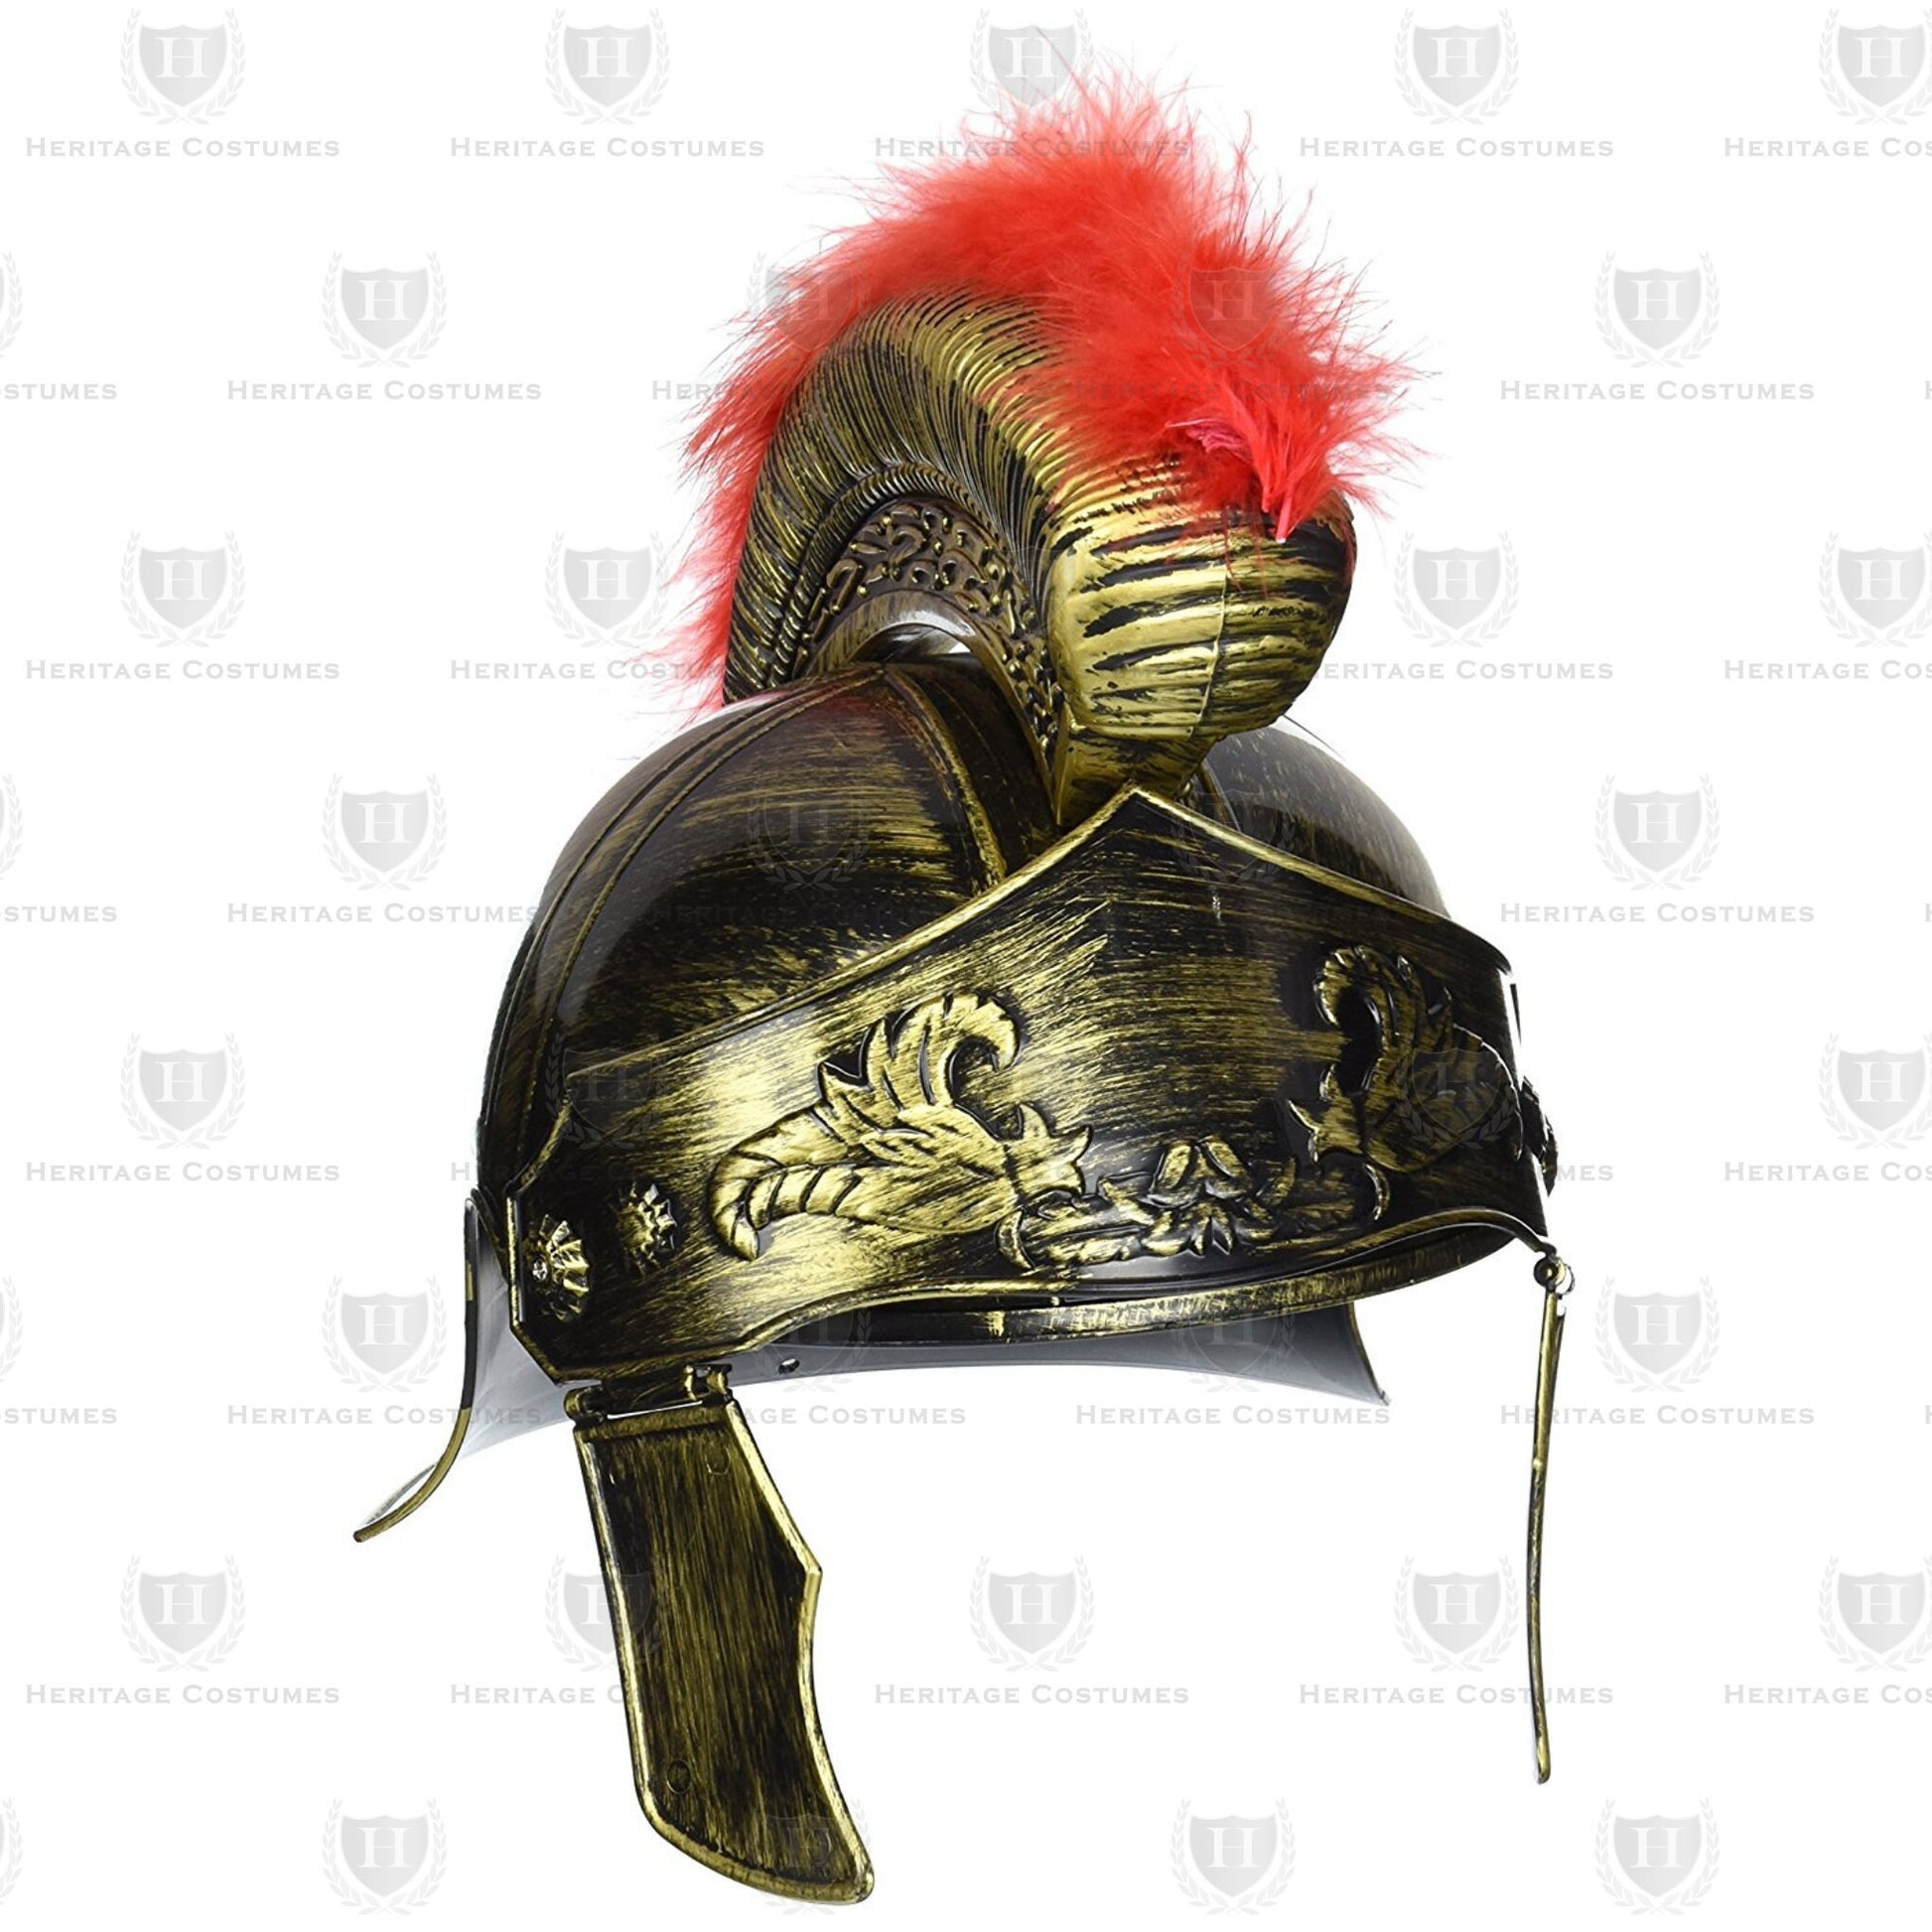 Children's Roman General Military Uniform, Mark Antony/Julius Caesar Costume